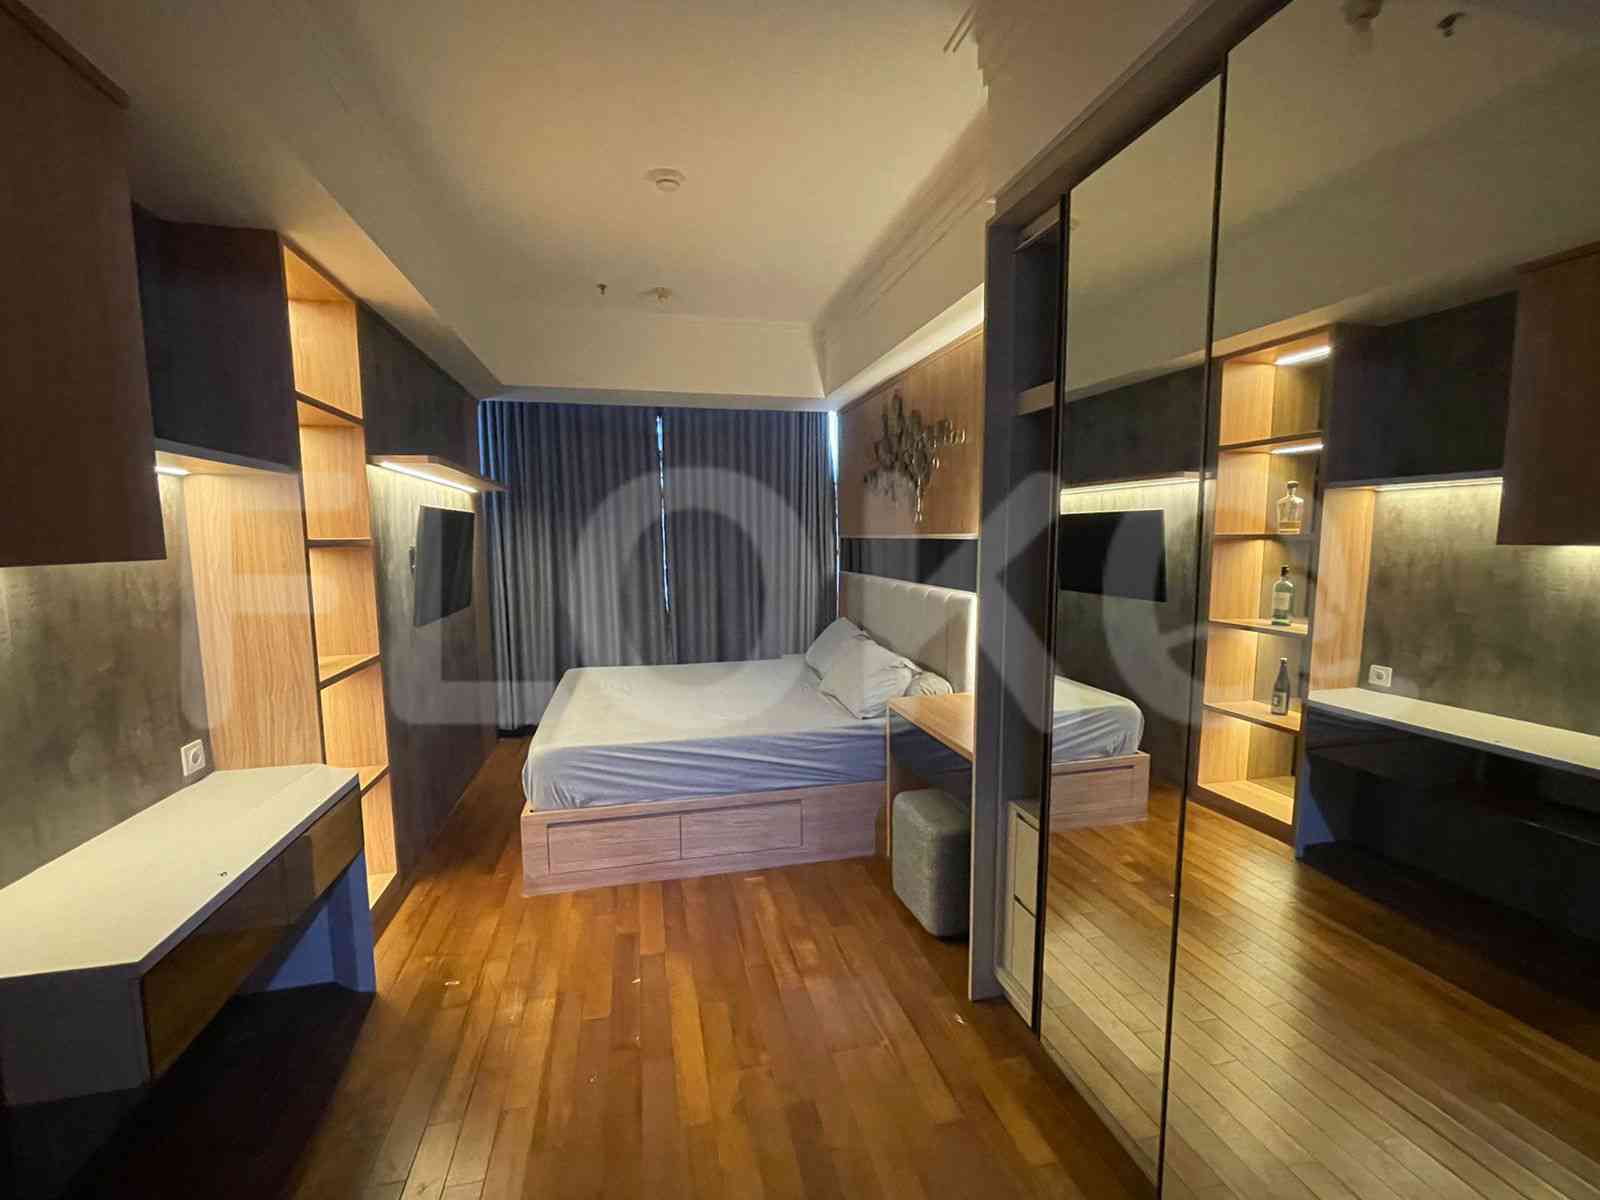 3 Bedroom on 12th Floor for Rent in Casa Grande - fte871 7